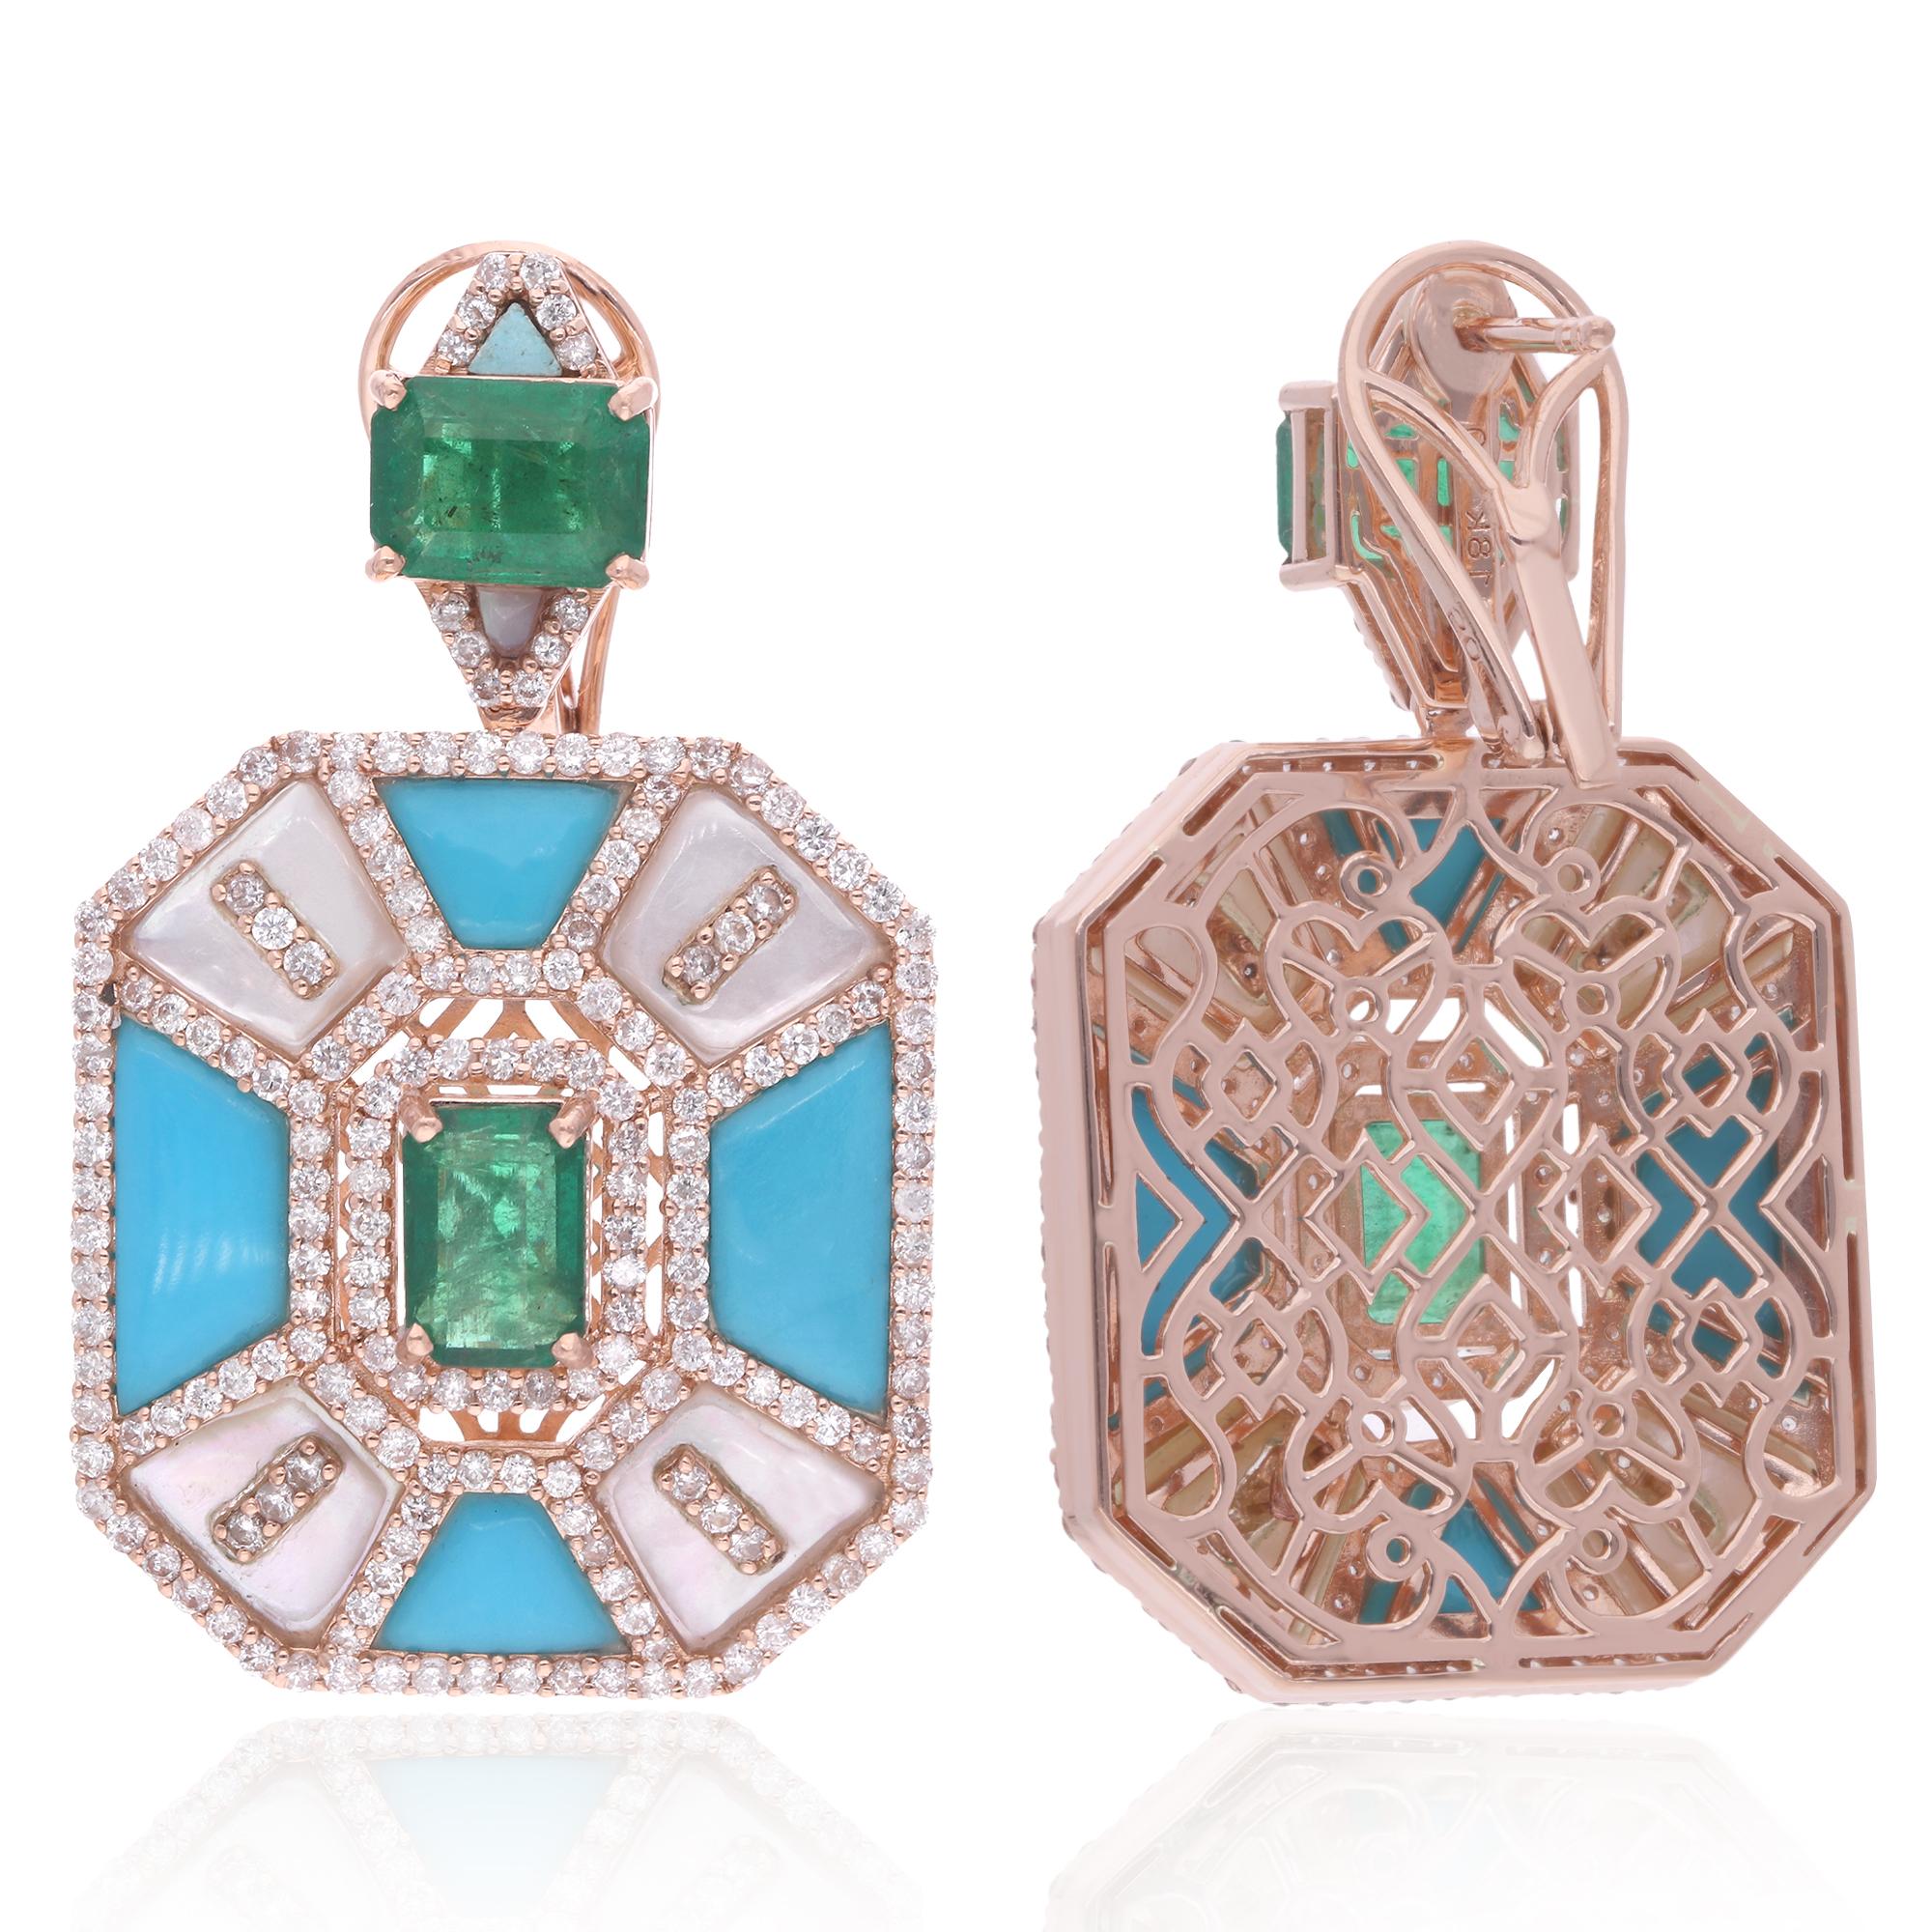 Erhöhen Sie Ihren Stil mit diesen bezaubernden Ohrringen aus Smaragdtürkis, die mit Perlmutt und Diamanten verziert sind und in 14 Karat Roségold gefertigt wurden. Diese Ohrringe strahlen Eleganz und Raffinesse aus und vereinen den natürlichen Reiz